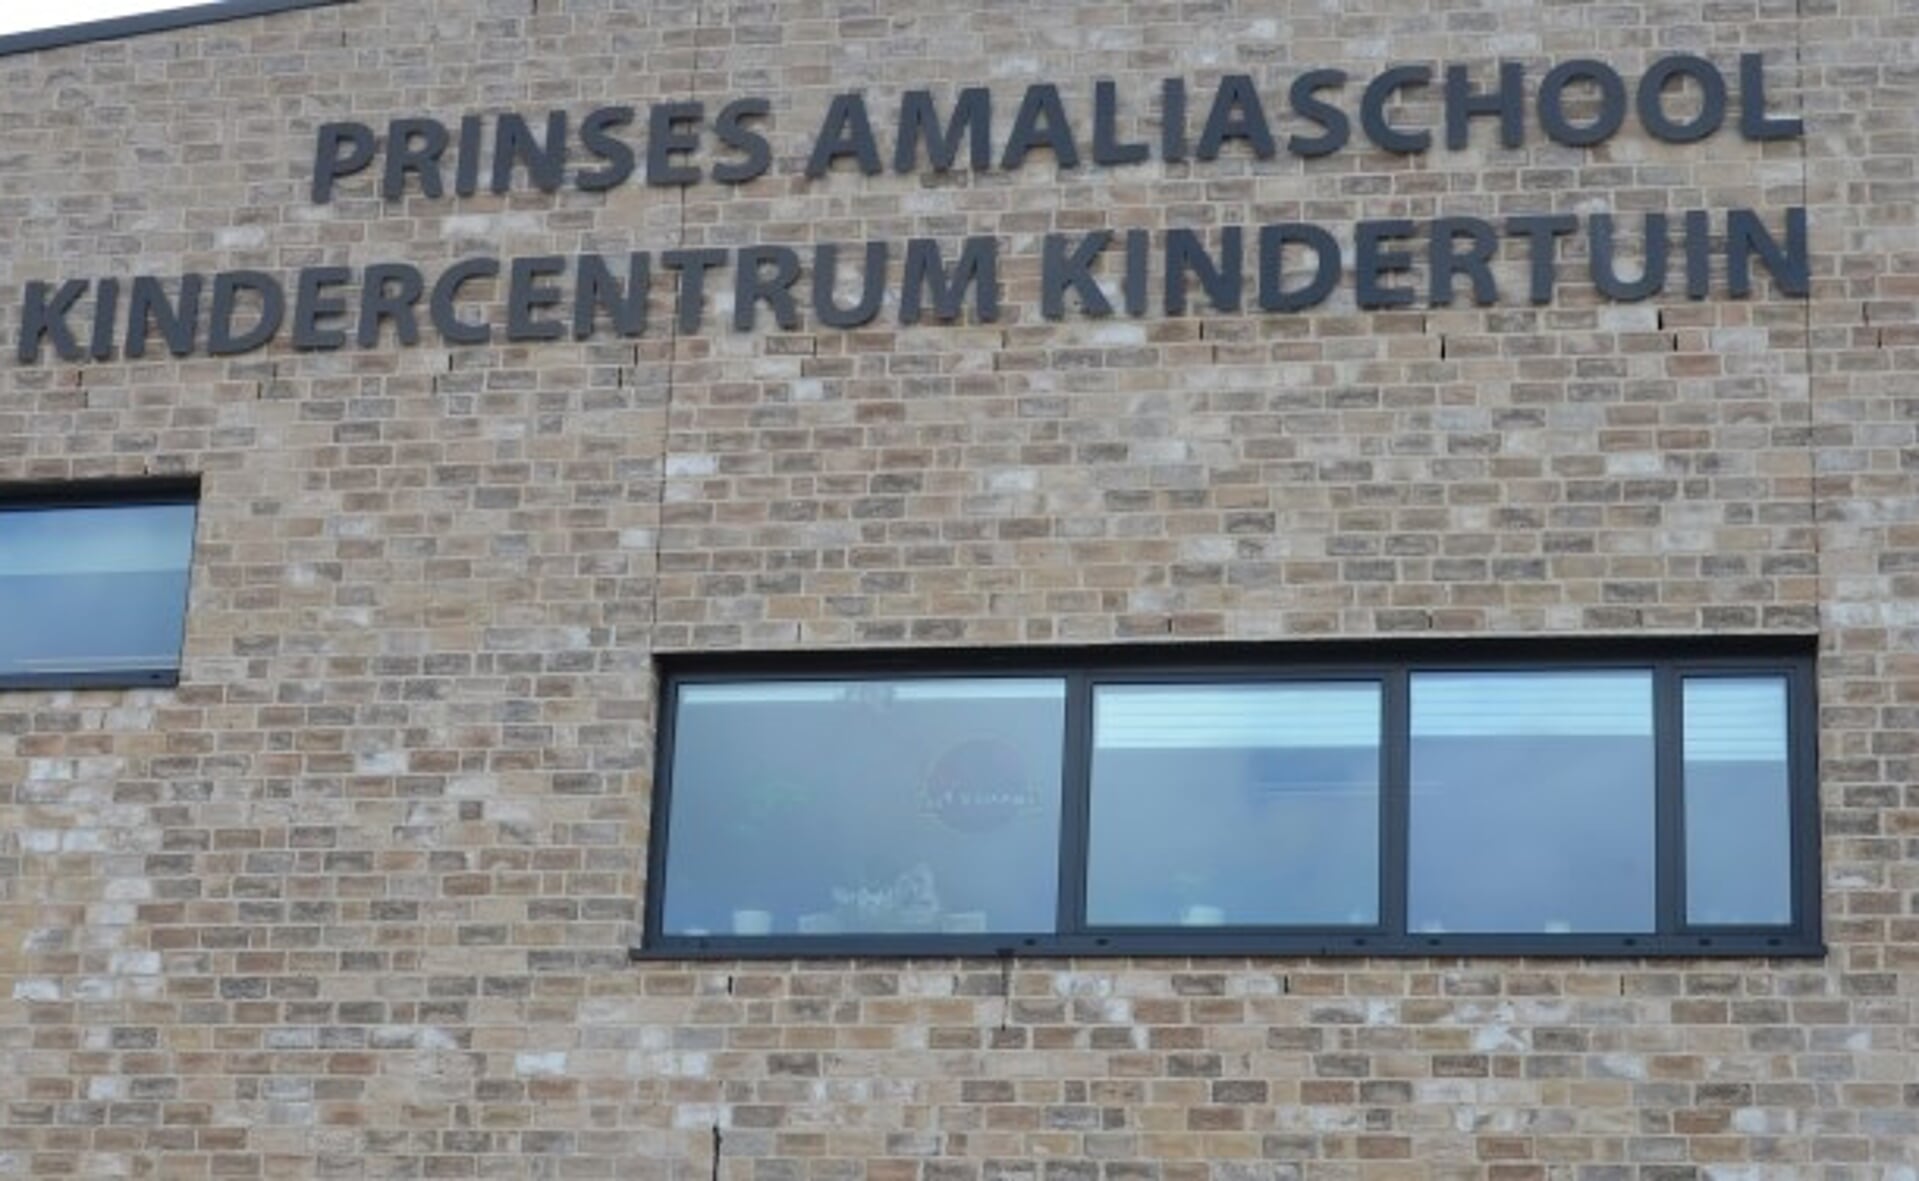 De Amaliaschool, één van de scholen die onder stichting Sint-Christoffel vallen.